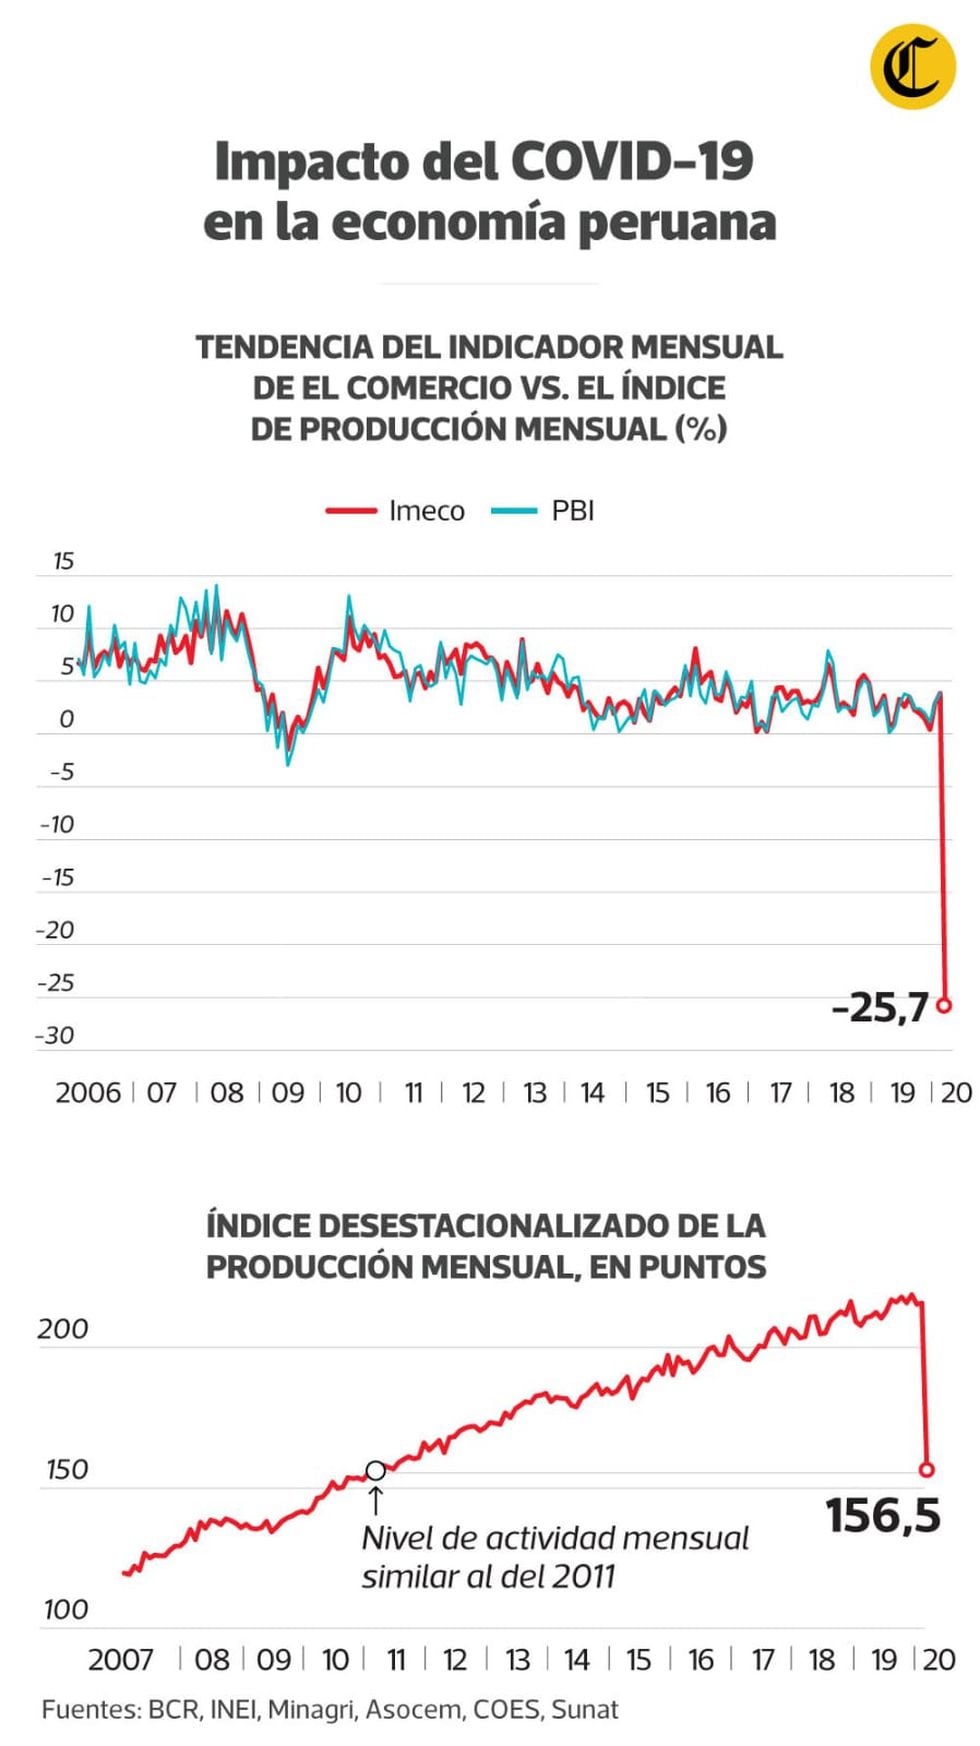 Imeco: Economía peruana se habría contraído 25,7% en un marzo con la mitad de días con inmovilización social